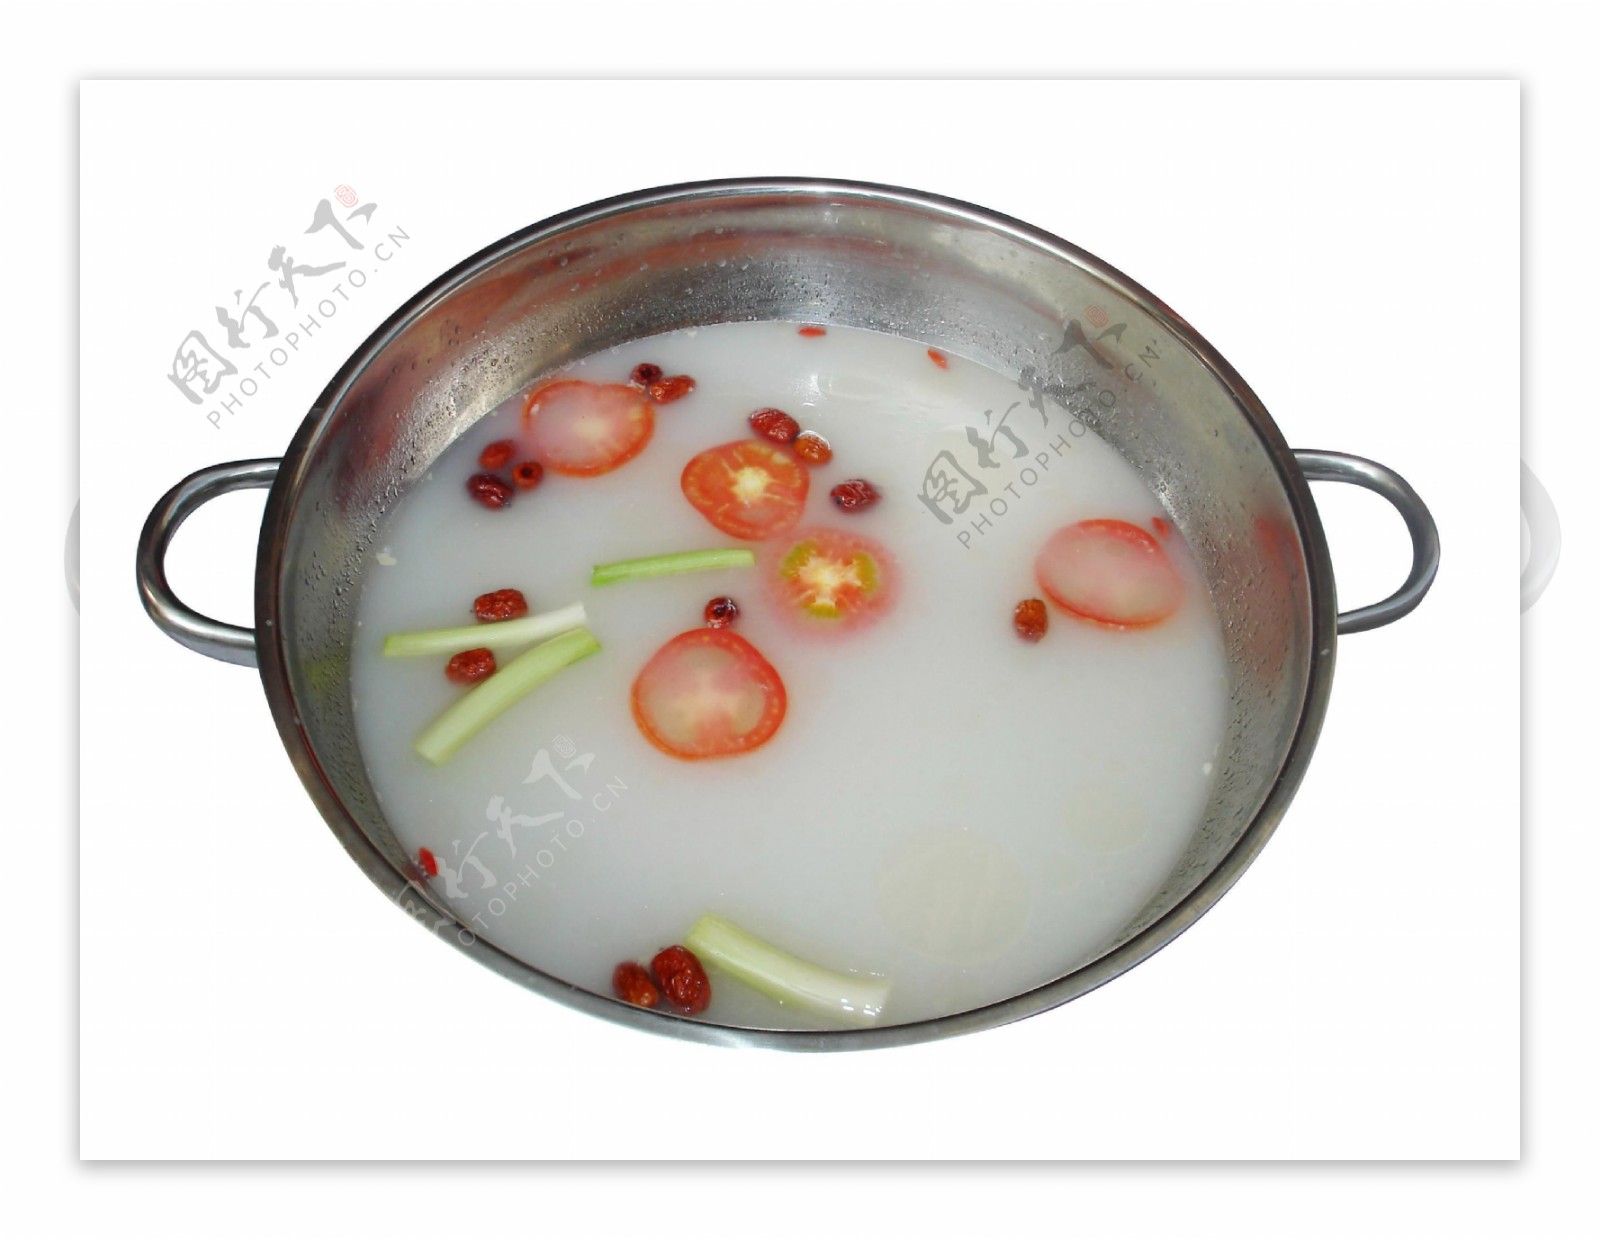 川菜清汤锅底图片